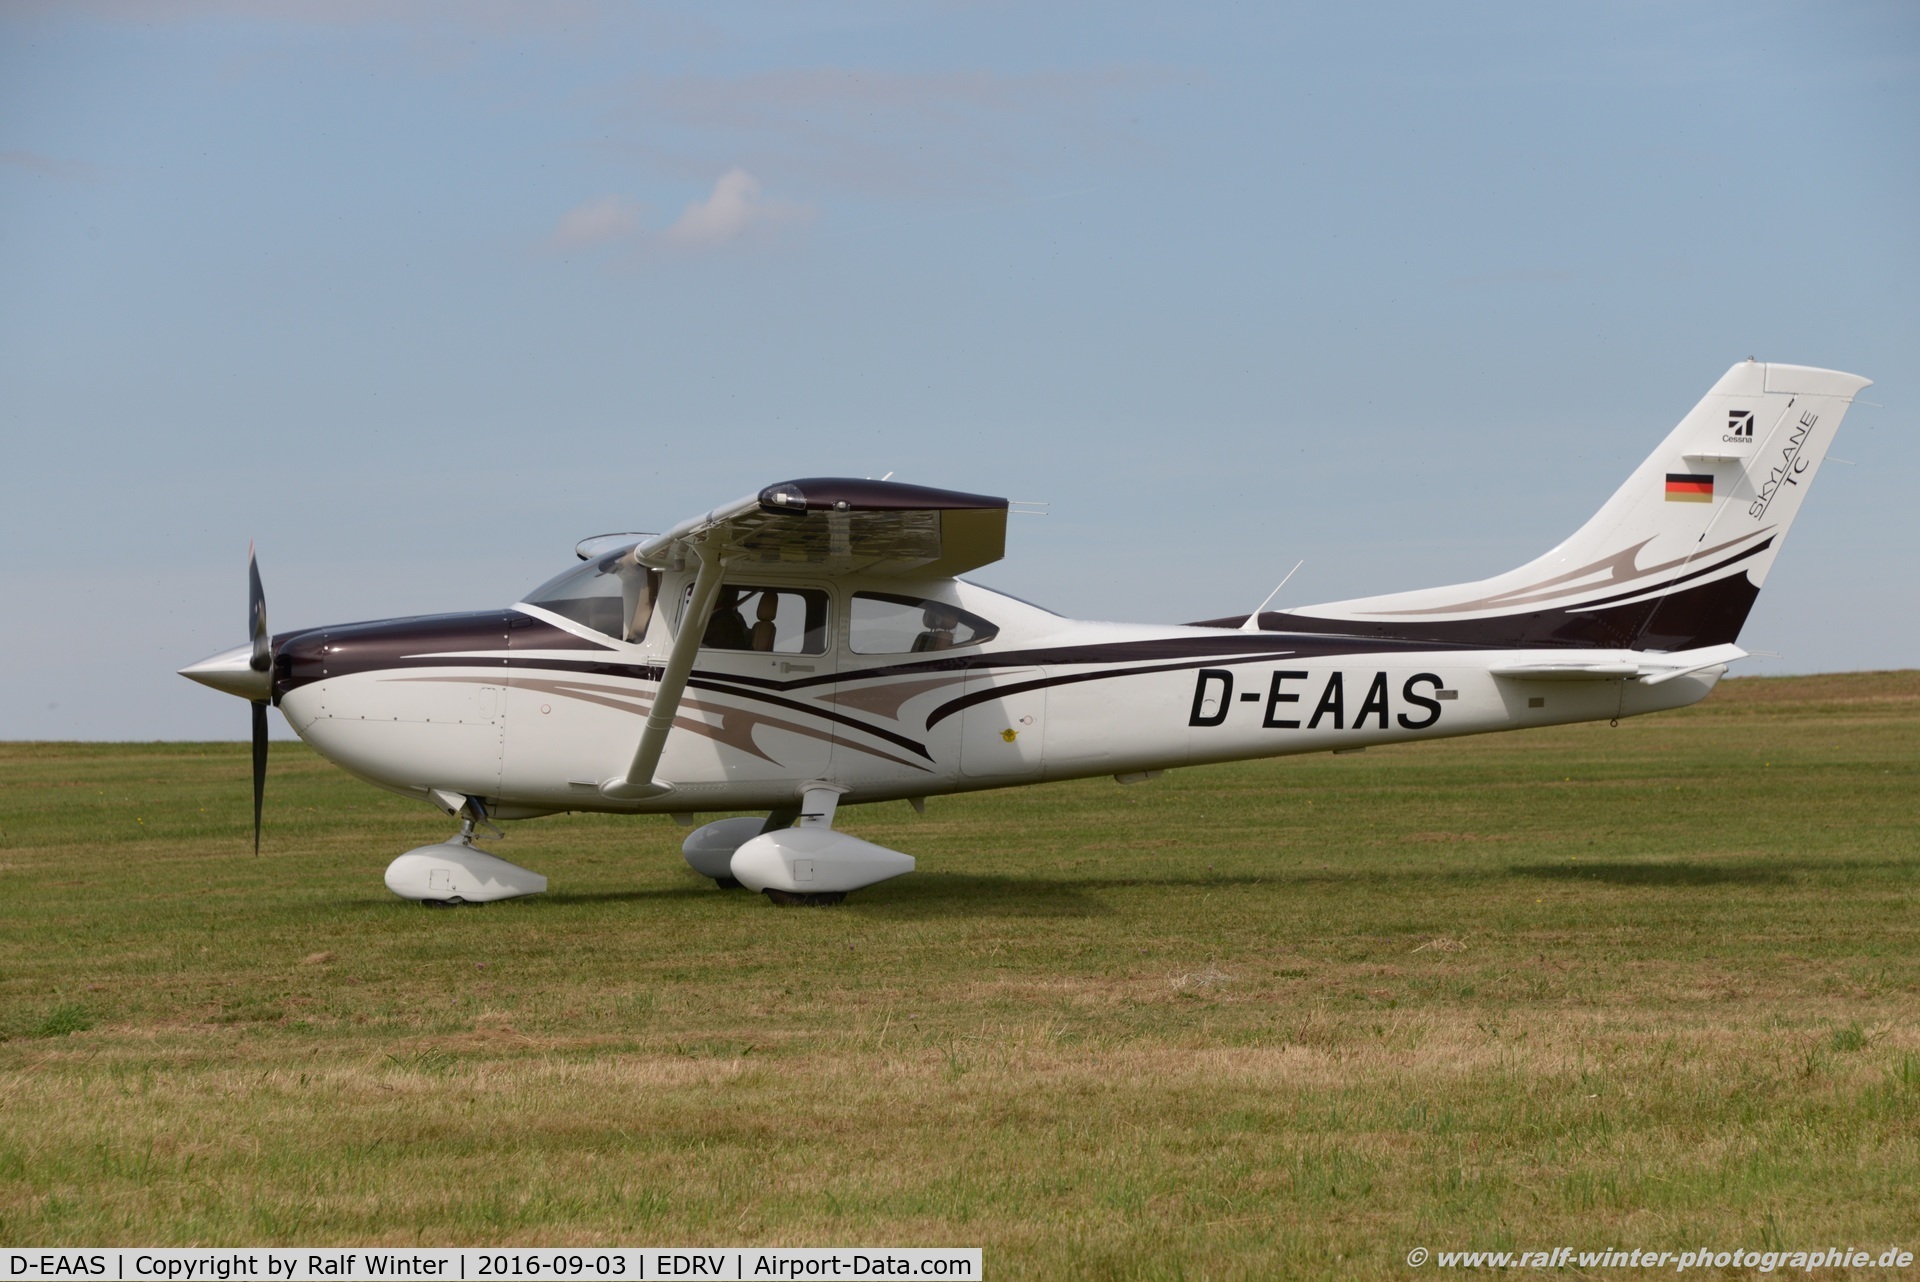 D-EAAS, Cessna 182R Turbo Skylane Skylane C/N T18209100, Cessna T182R Turbo Skylane - Private - T18209100 - D-EAAS - 03.09.2016 - EDRV